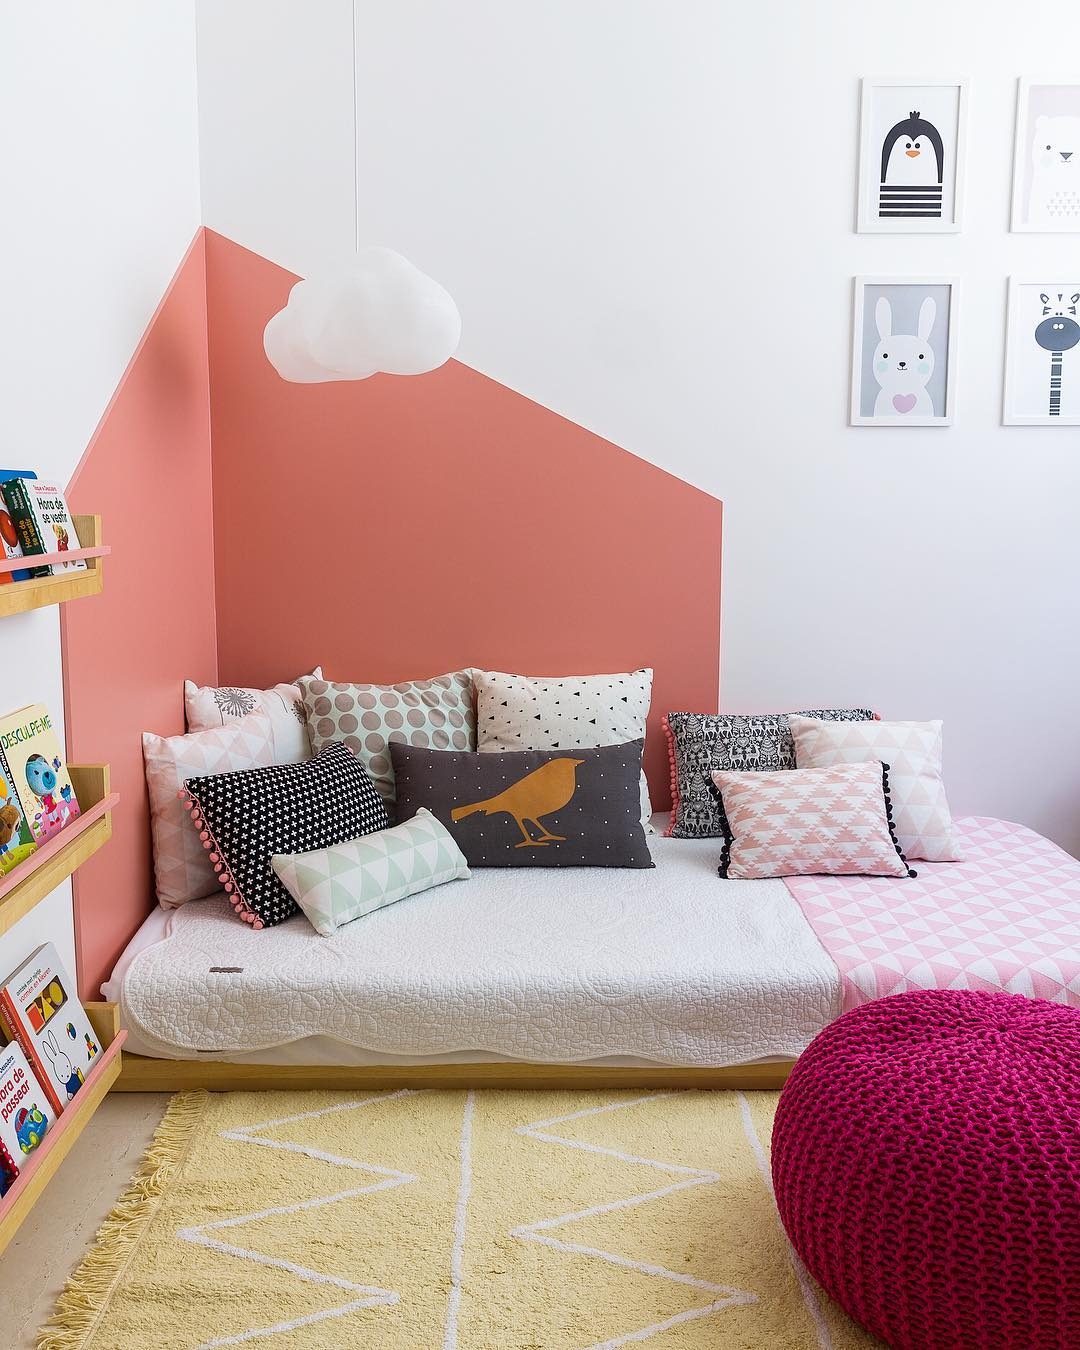 Mẹo hay khi trang trí phòng ngủ nhỏ theo phong cách đơn giản mà đẹp